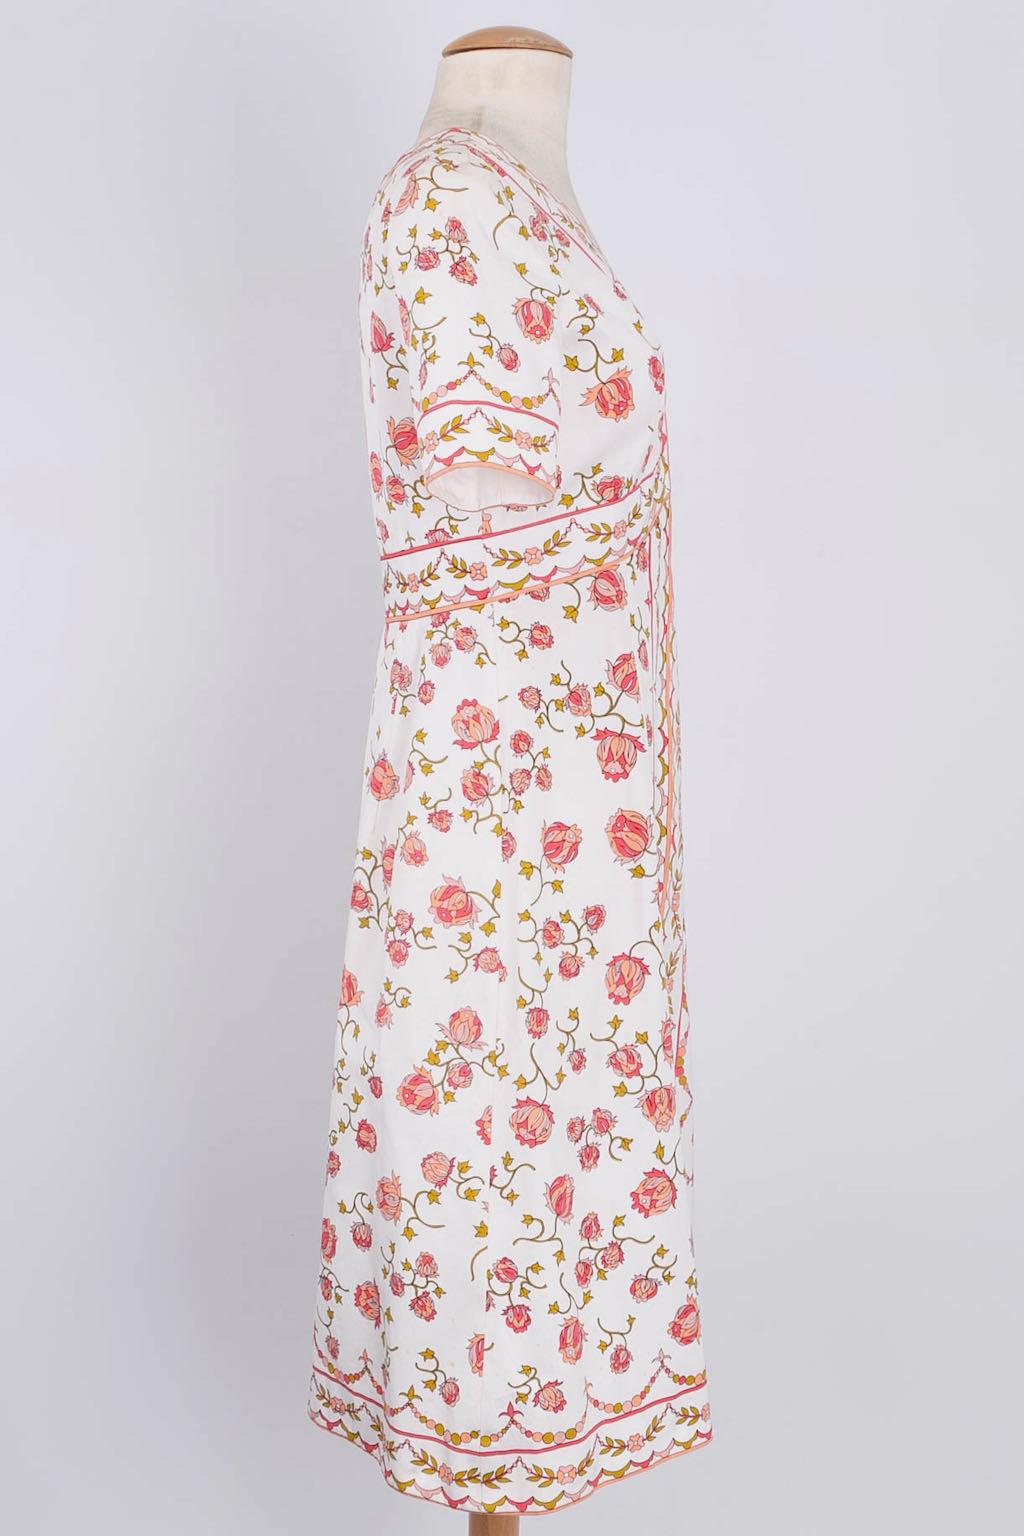 Women's Pucci Cotton Flower Dress, Size 36FR For Sale